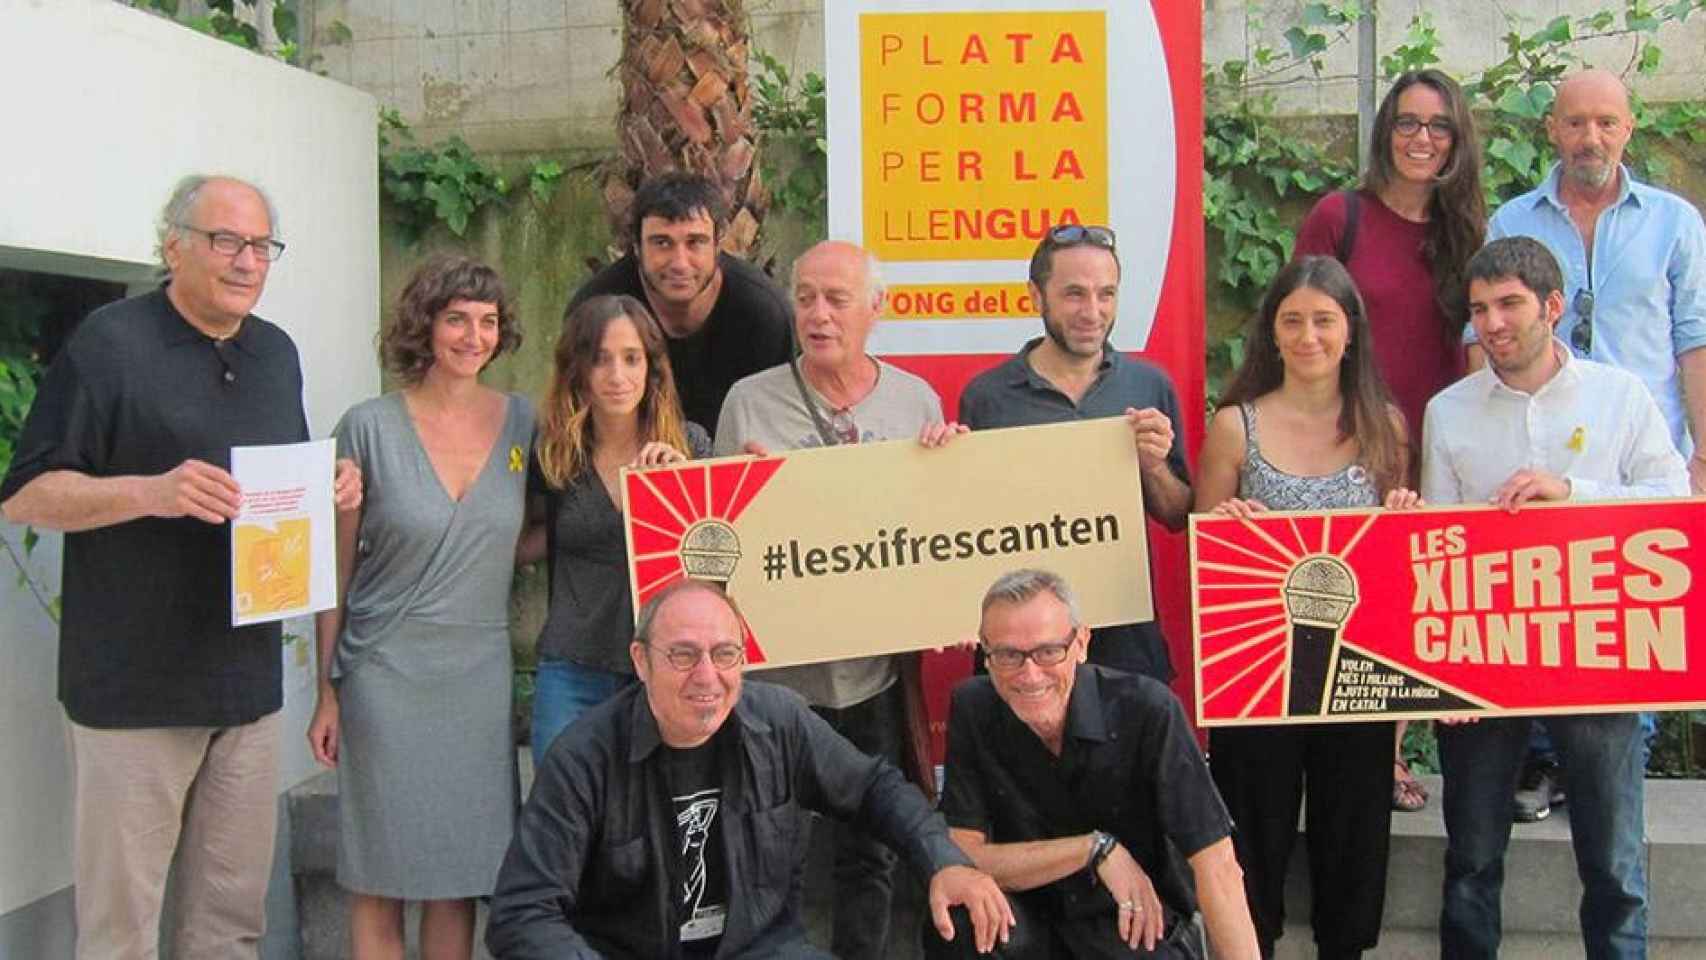 Acto de Plataforma per la Llengua, conocida como la ONG del catalán, a quien el Govern ha encargado un curso para prevenir el maltrato / CG